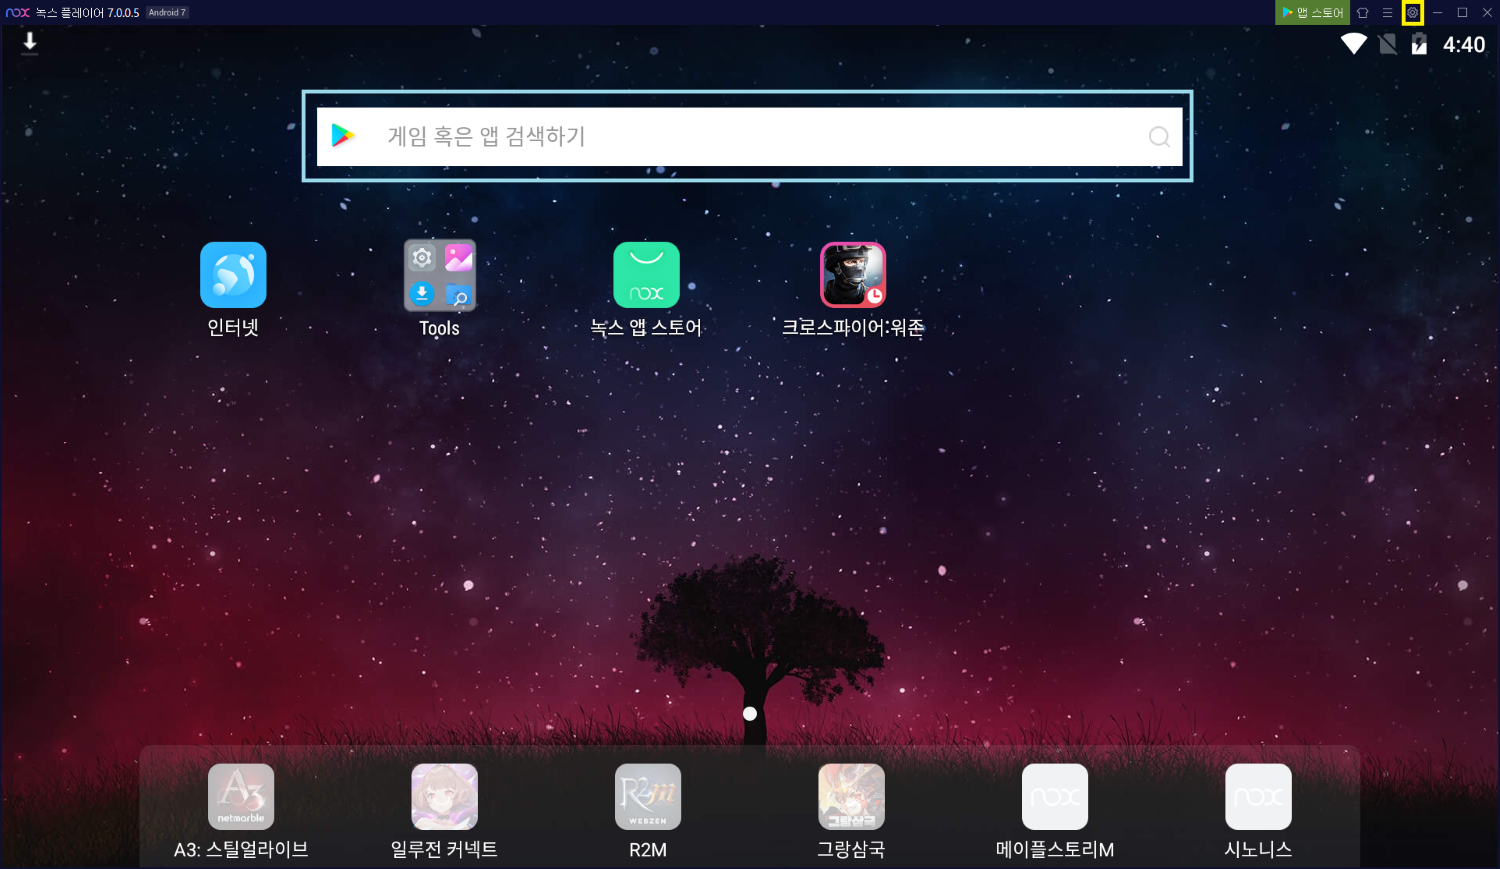 녹스 앱 플레이어 검색 창 및 설정 버튼